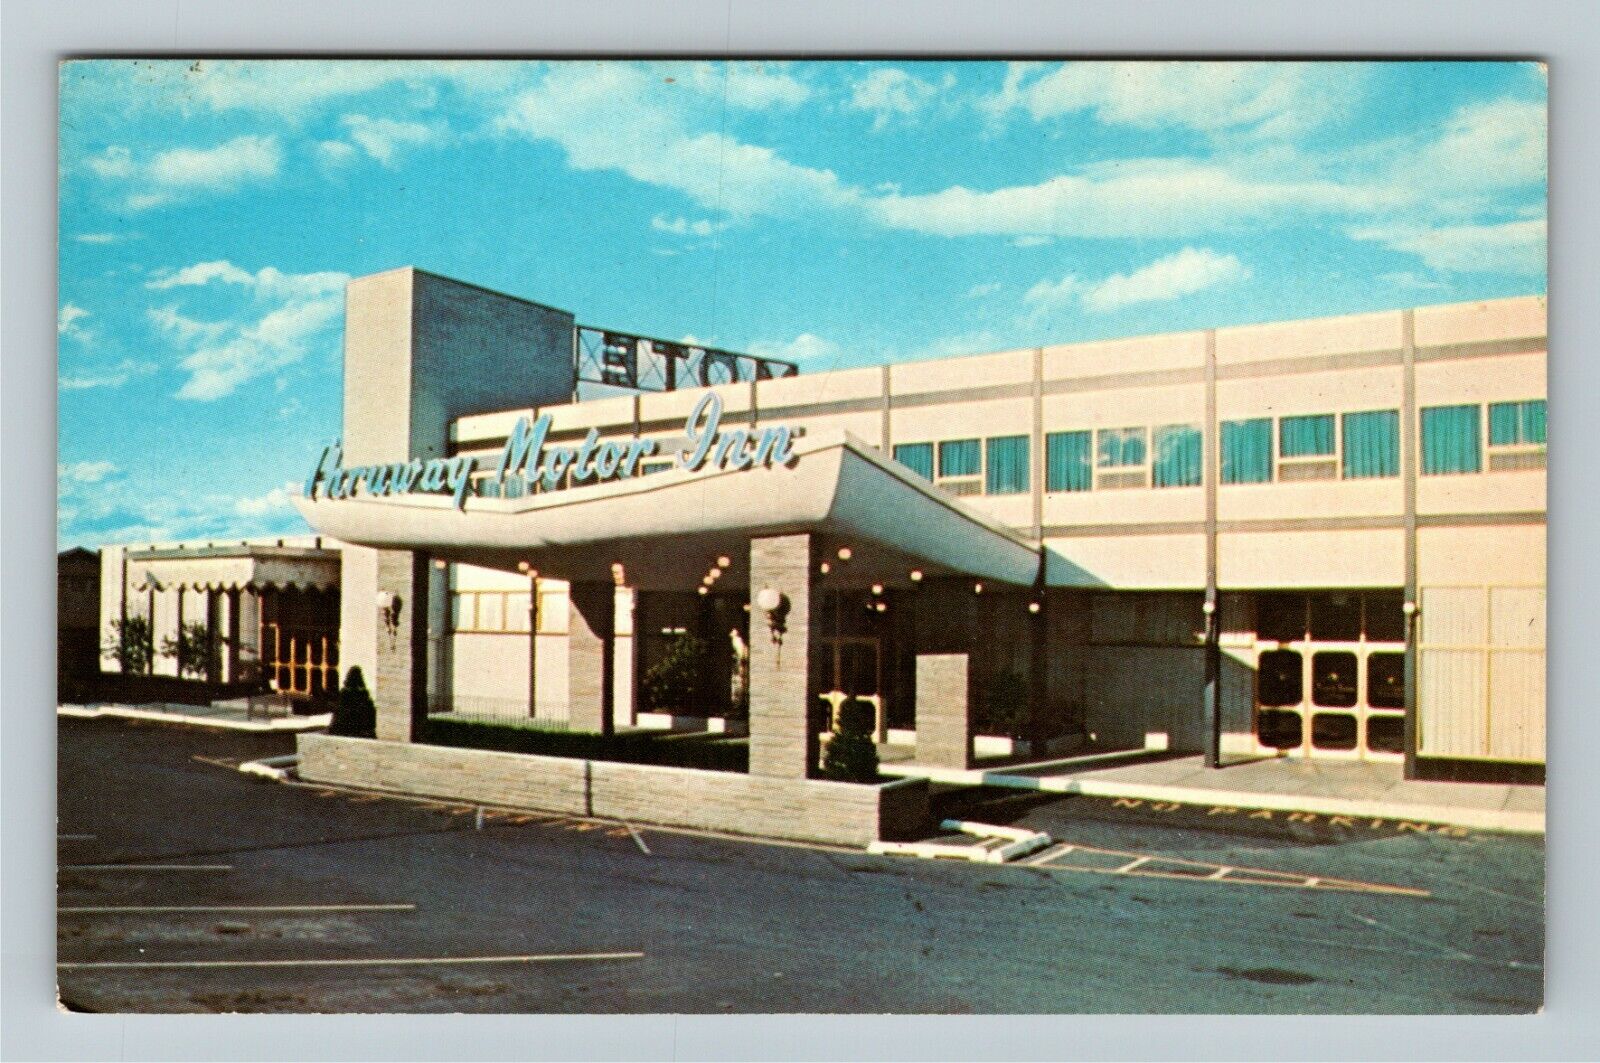 Albany NY-New York, Thruway Motor Inn, Advertising, Vintage Postcard